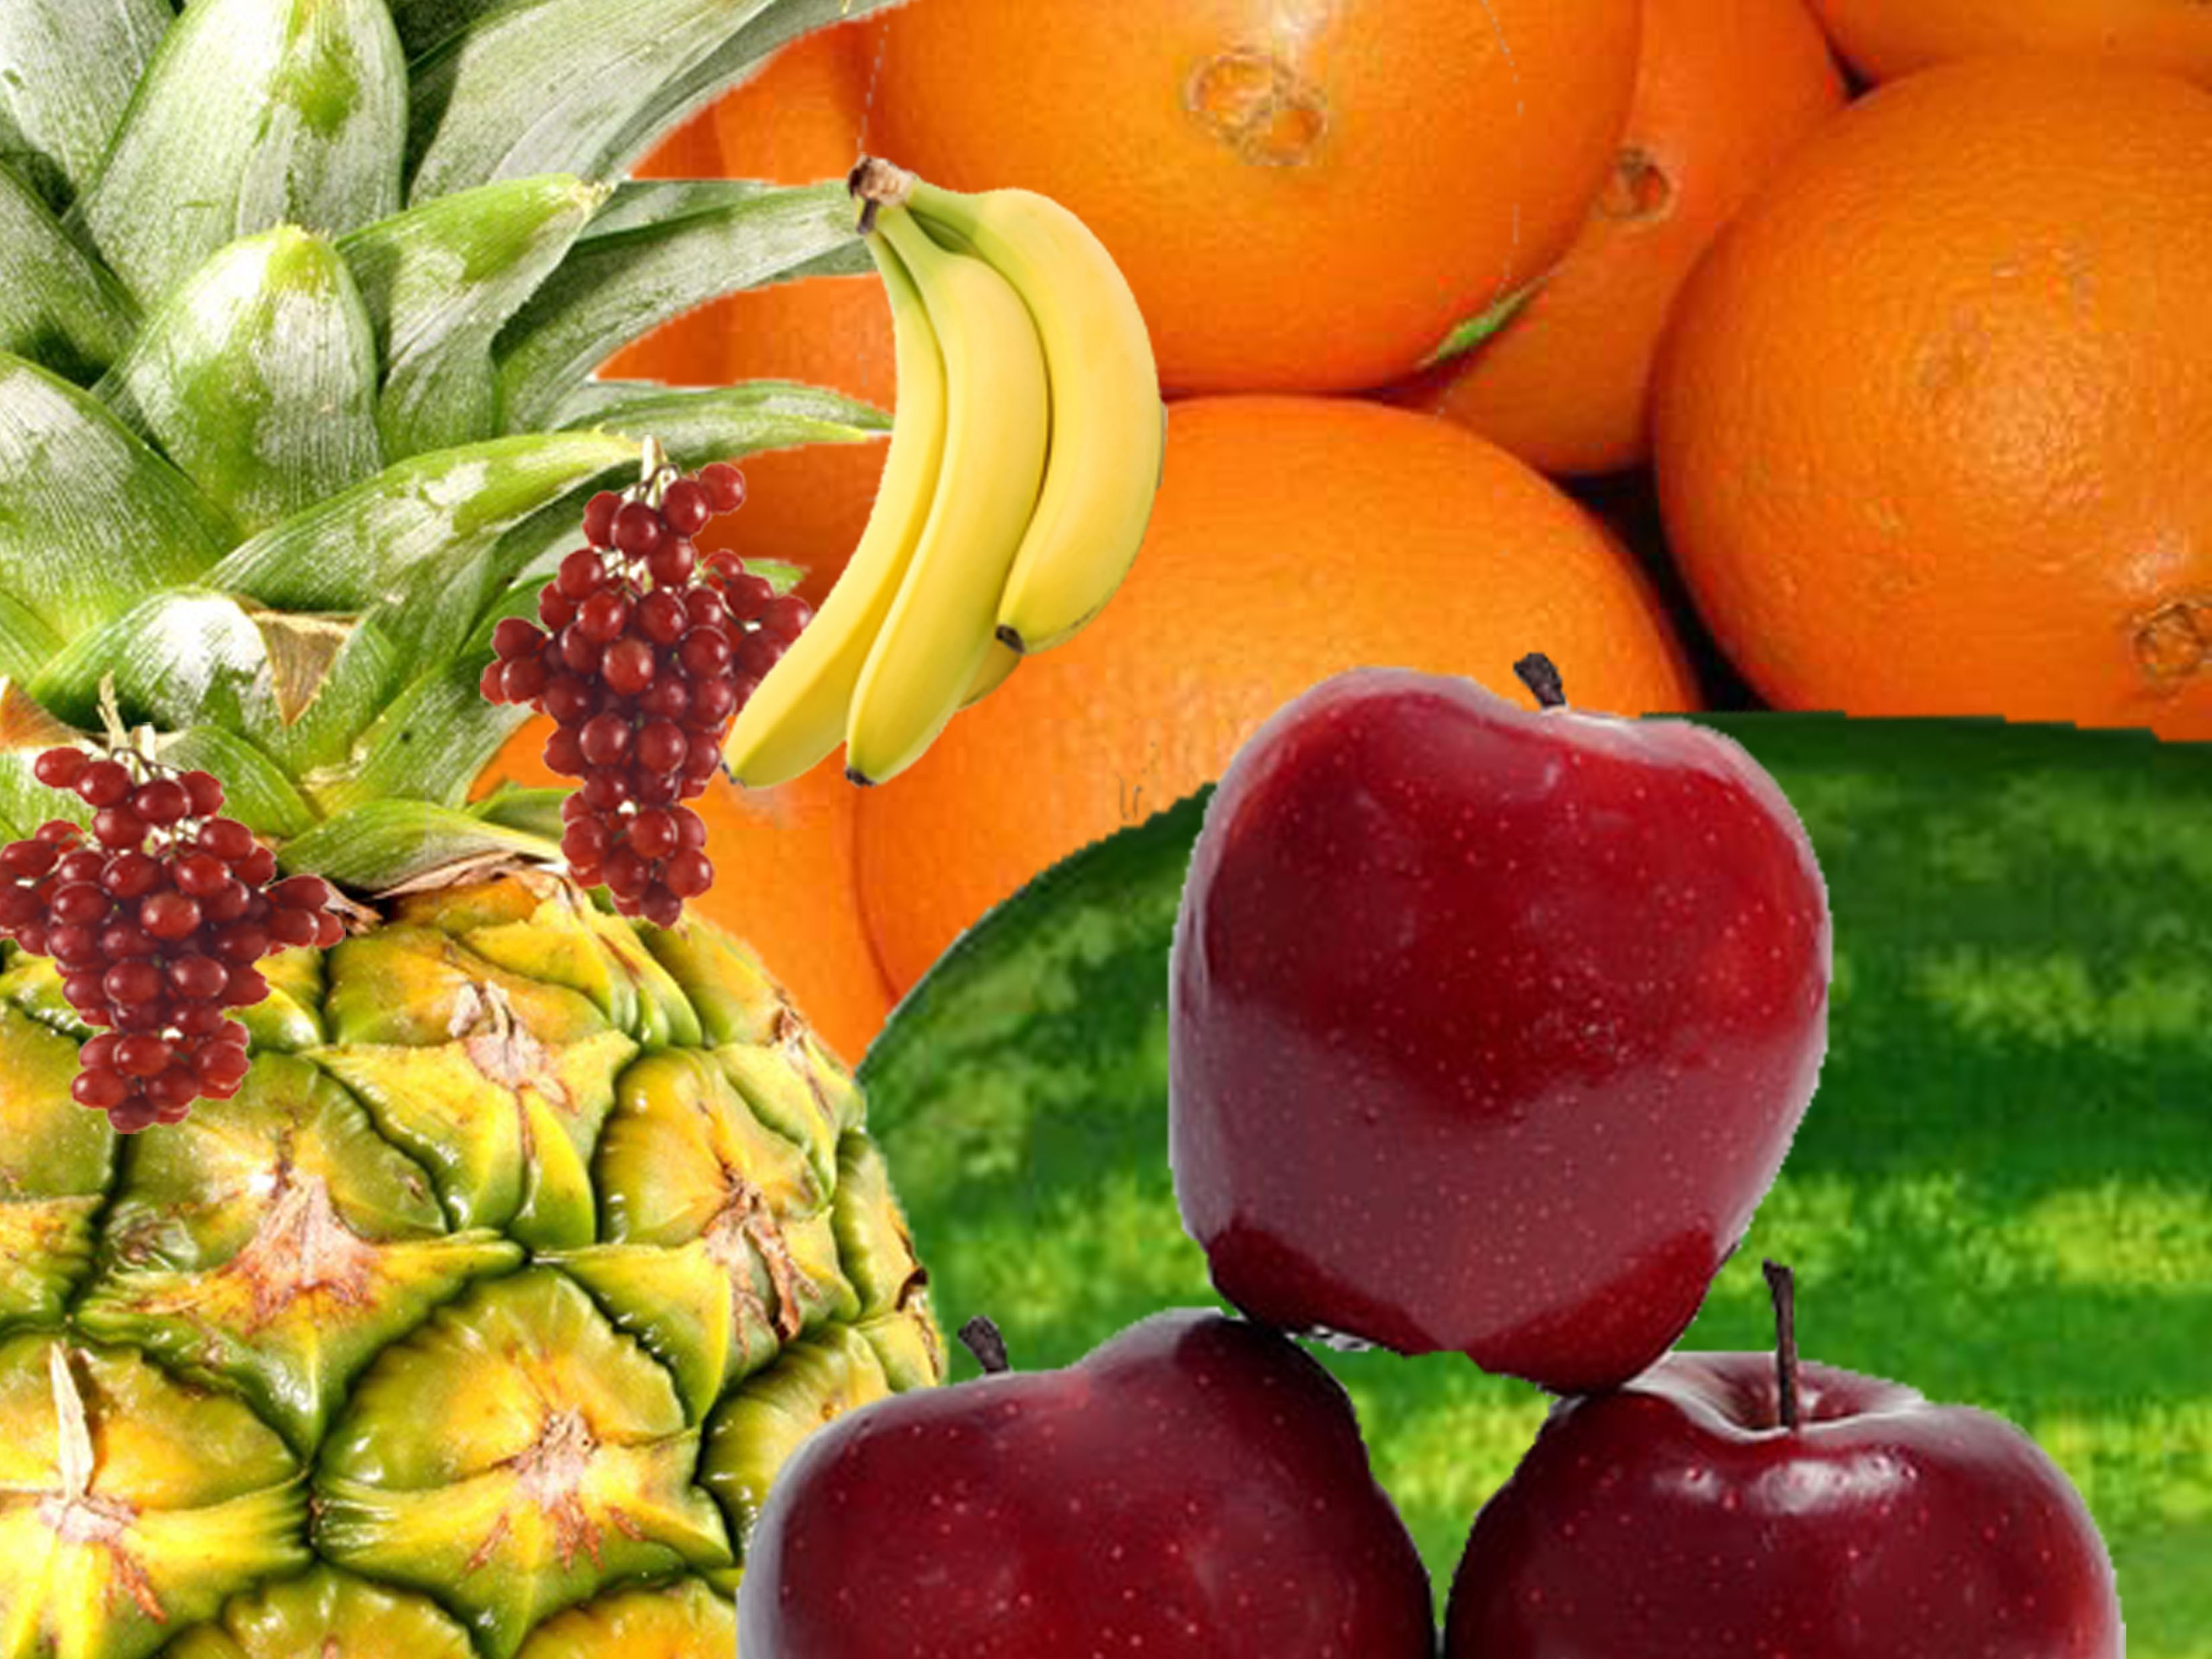 They some fruit. Фрукты коллаж. Фруктовый коллаж. Фотоколлаж с фруктами. Коллаж из фруктов и овощей.